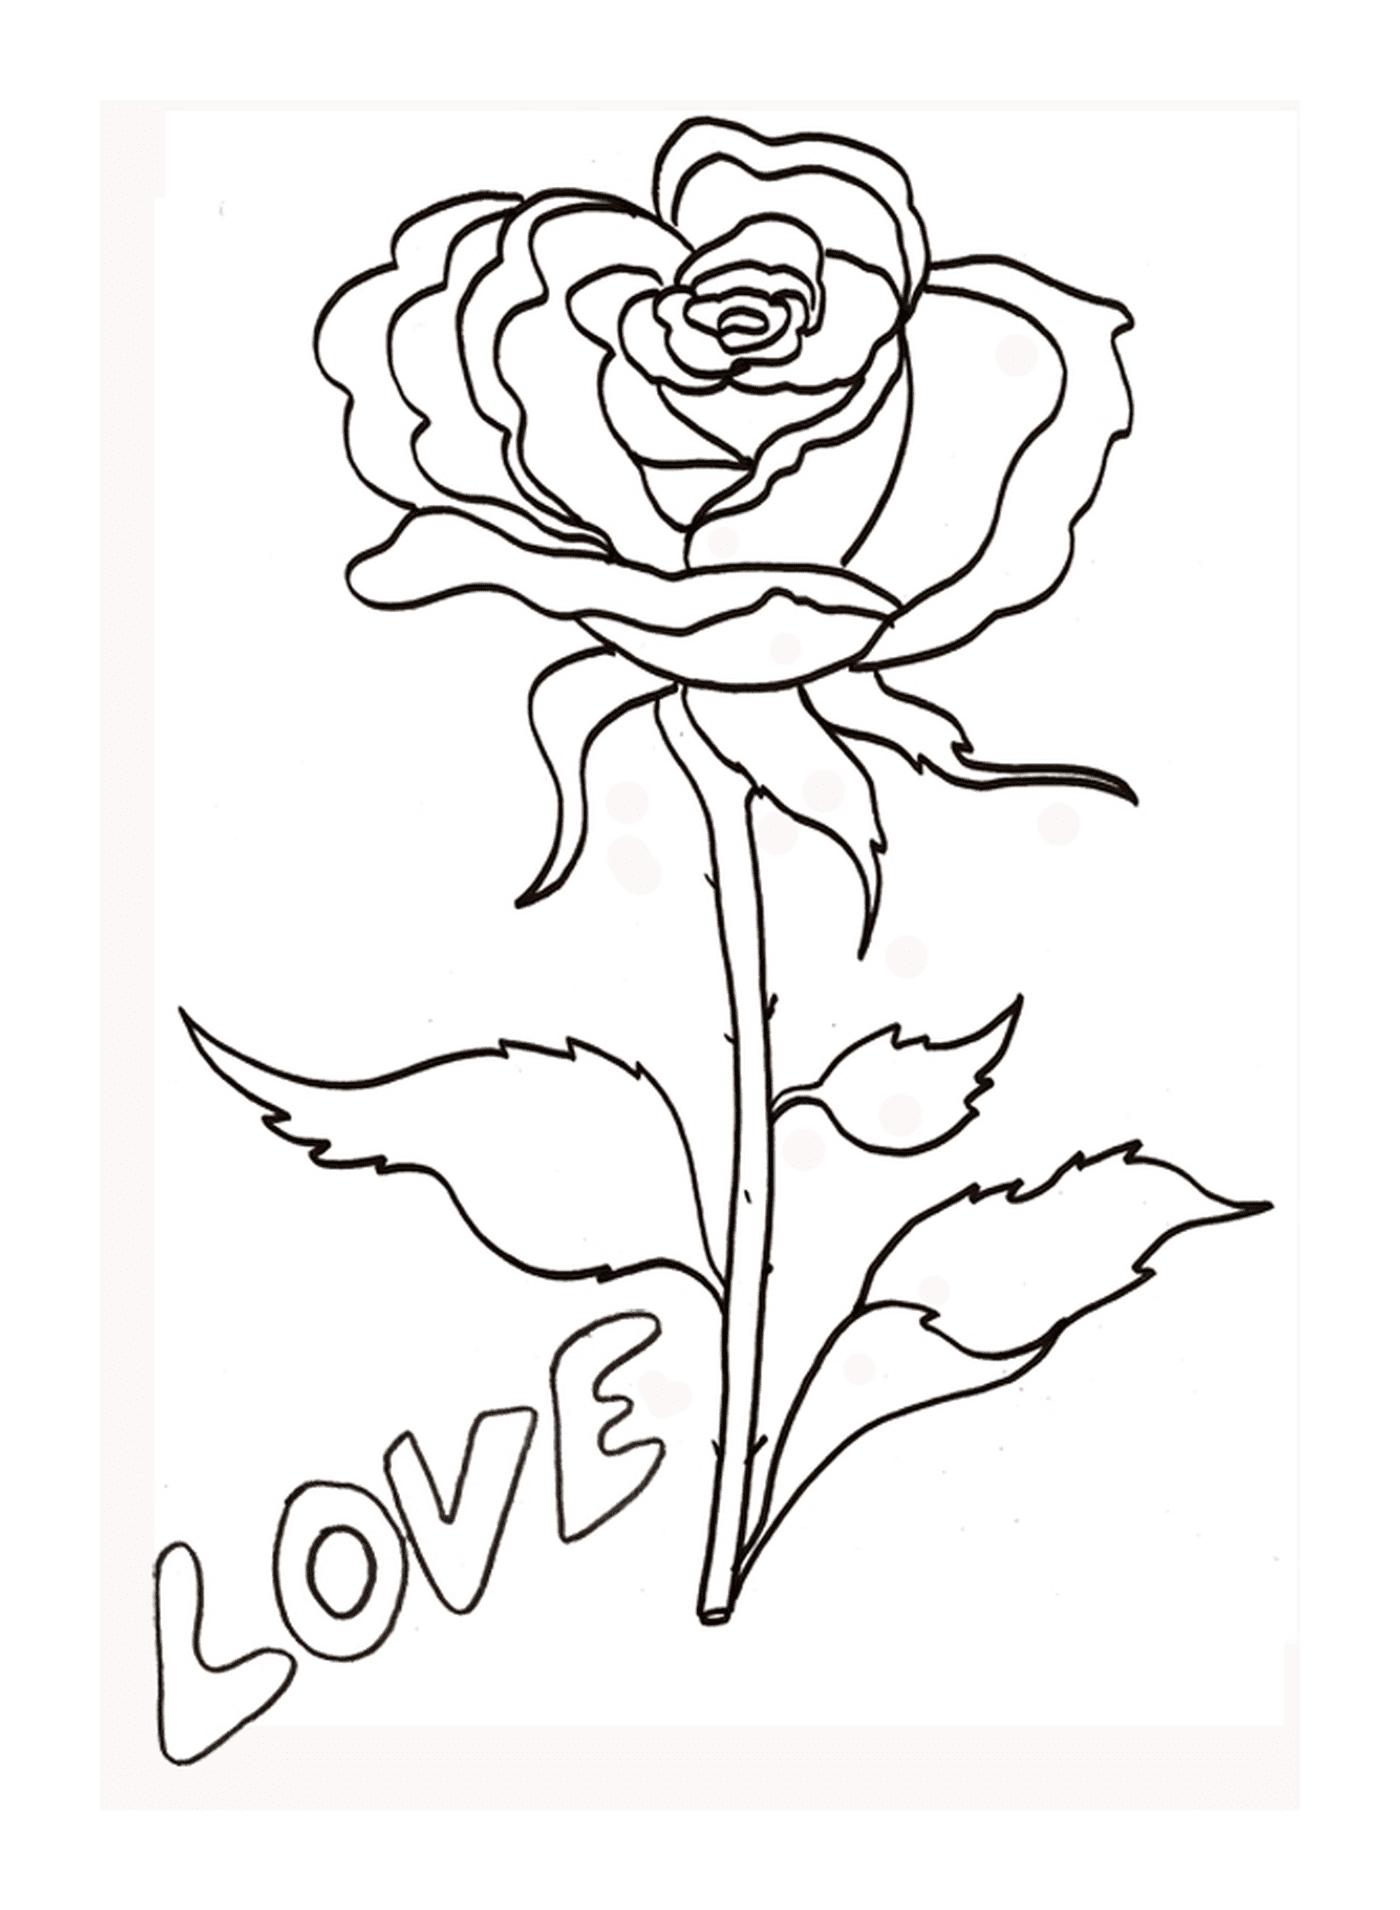  玫瑰与《爱之玫瑰》 